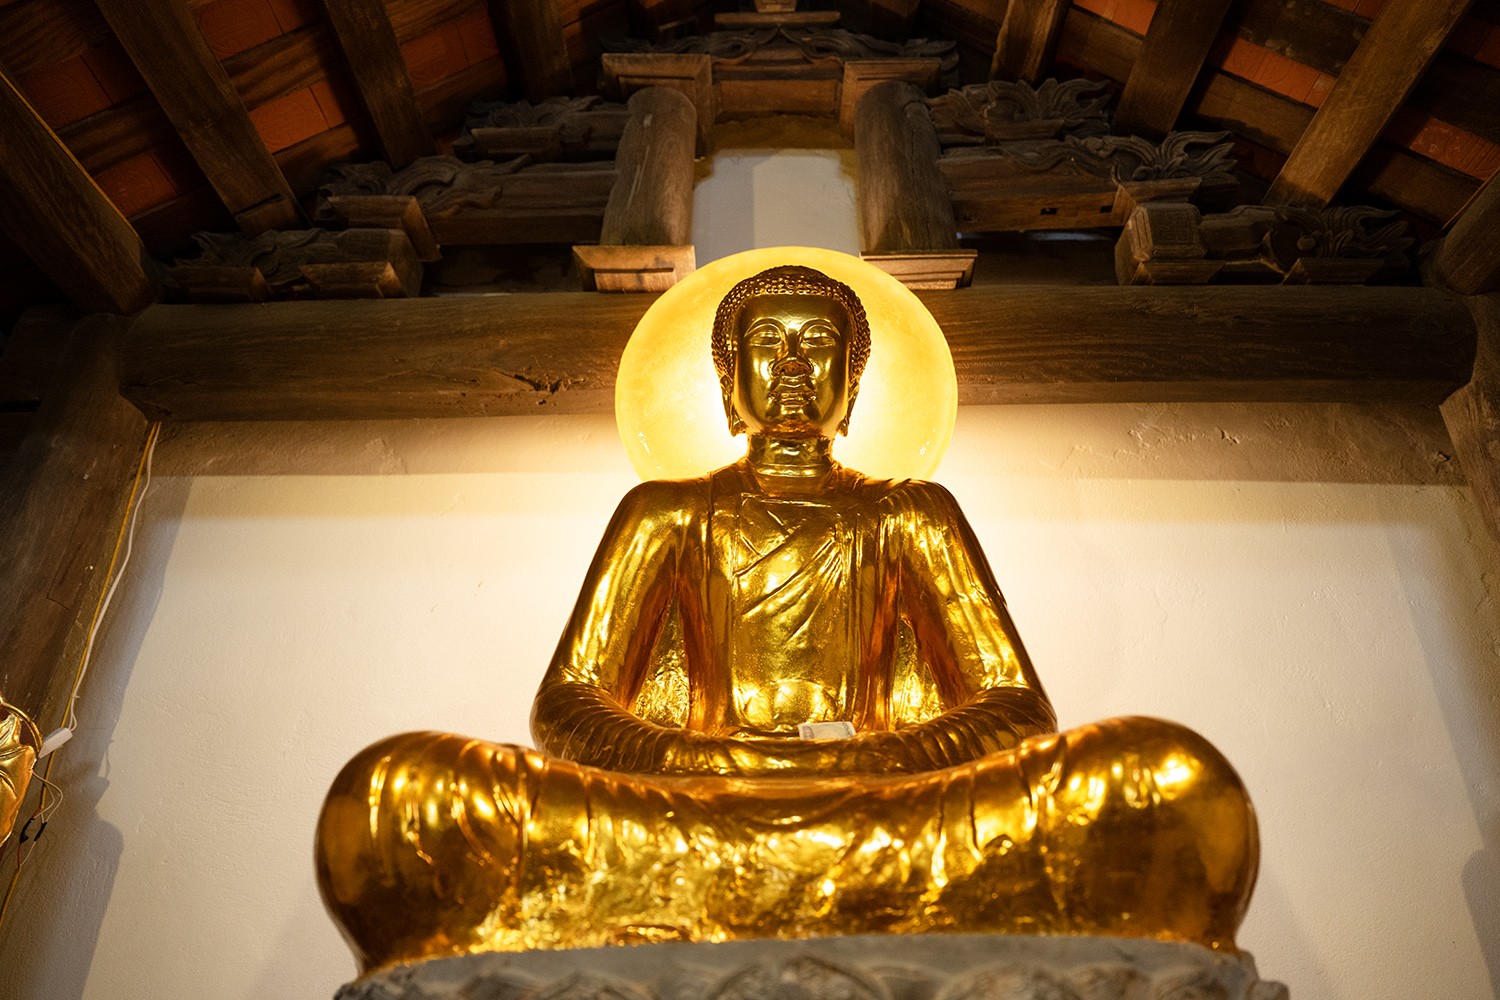 Phần tượng Phật cao 92 cm, rộng 72 cm, đường kính bệ sen 76 cm; được tạc bằng đá nguyên khối, sơn thếp vàng, ngồi trong tư thế thiền định, hai đầu gối khuỳnh rộng, thế ngồi hơi dướn mình ra phía trước.